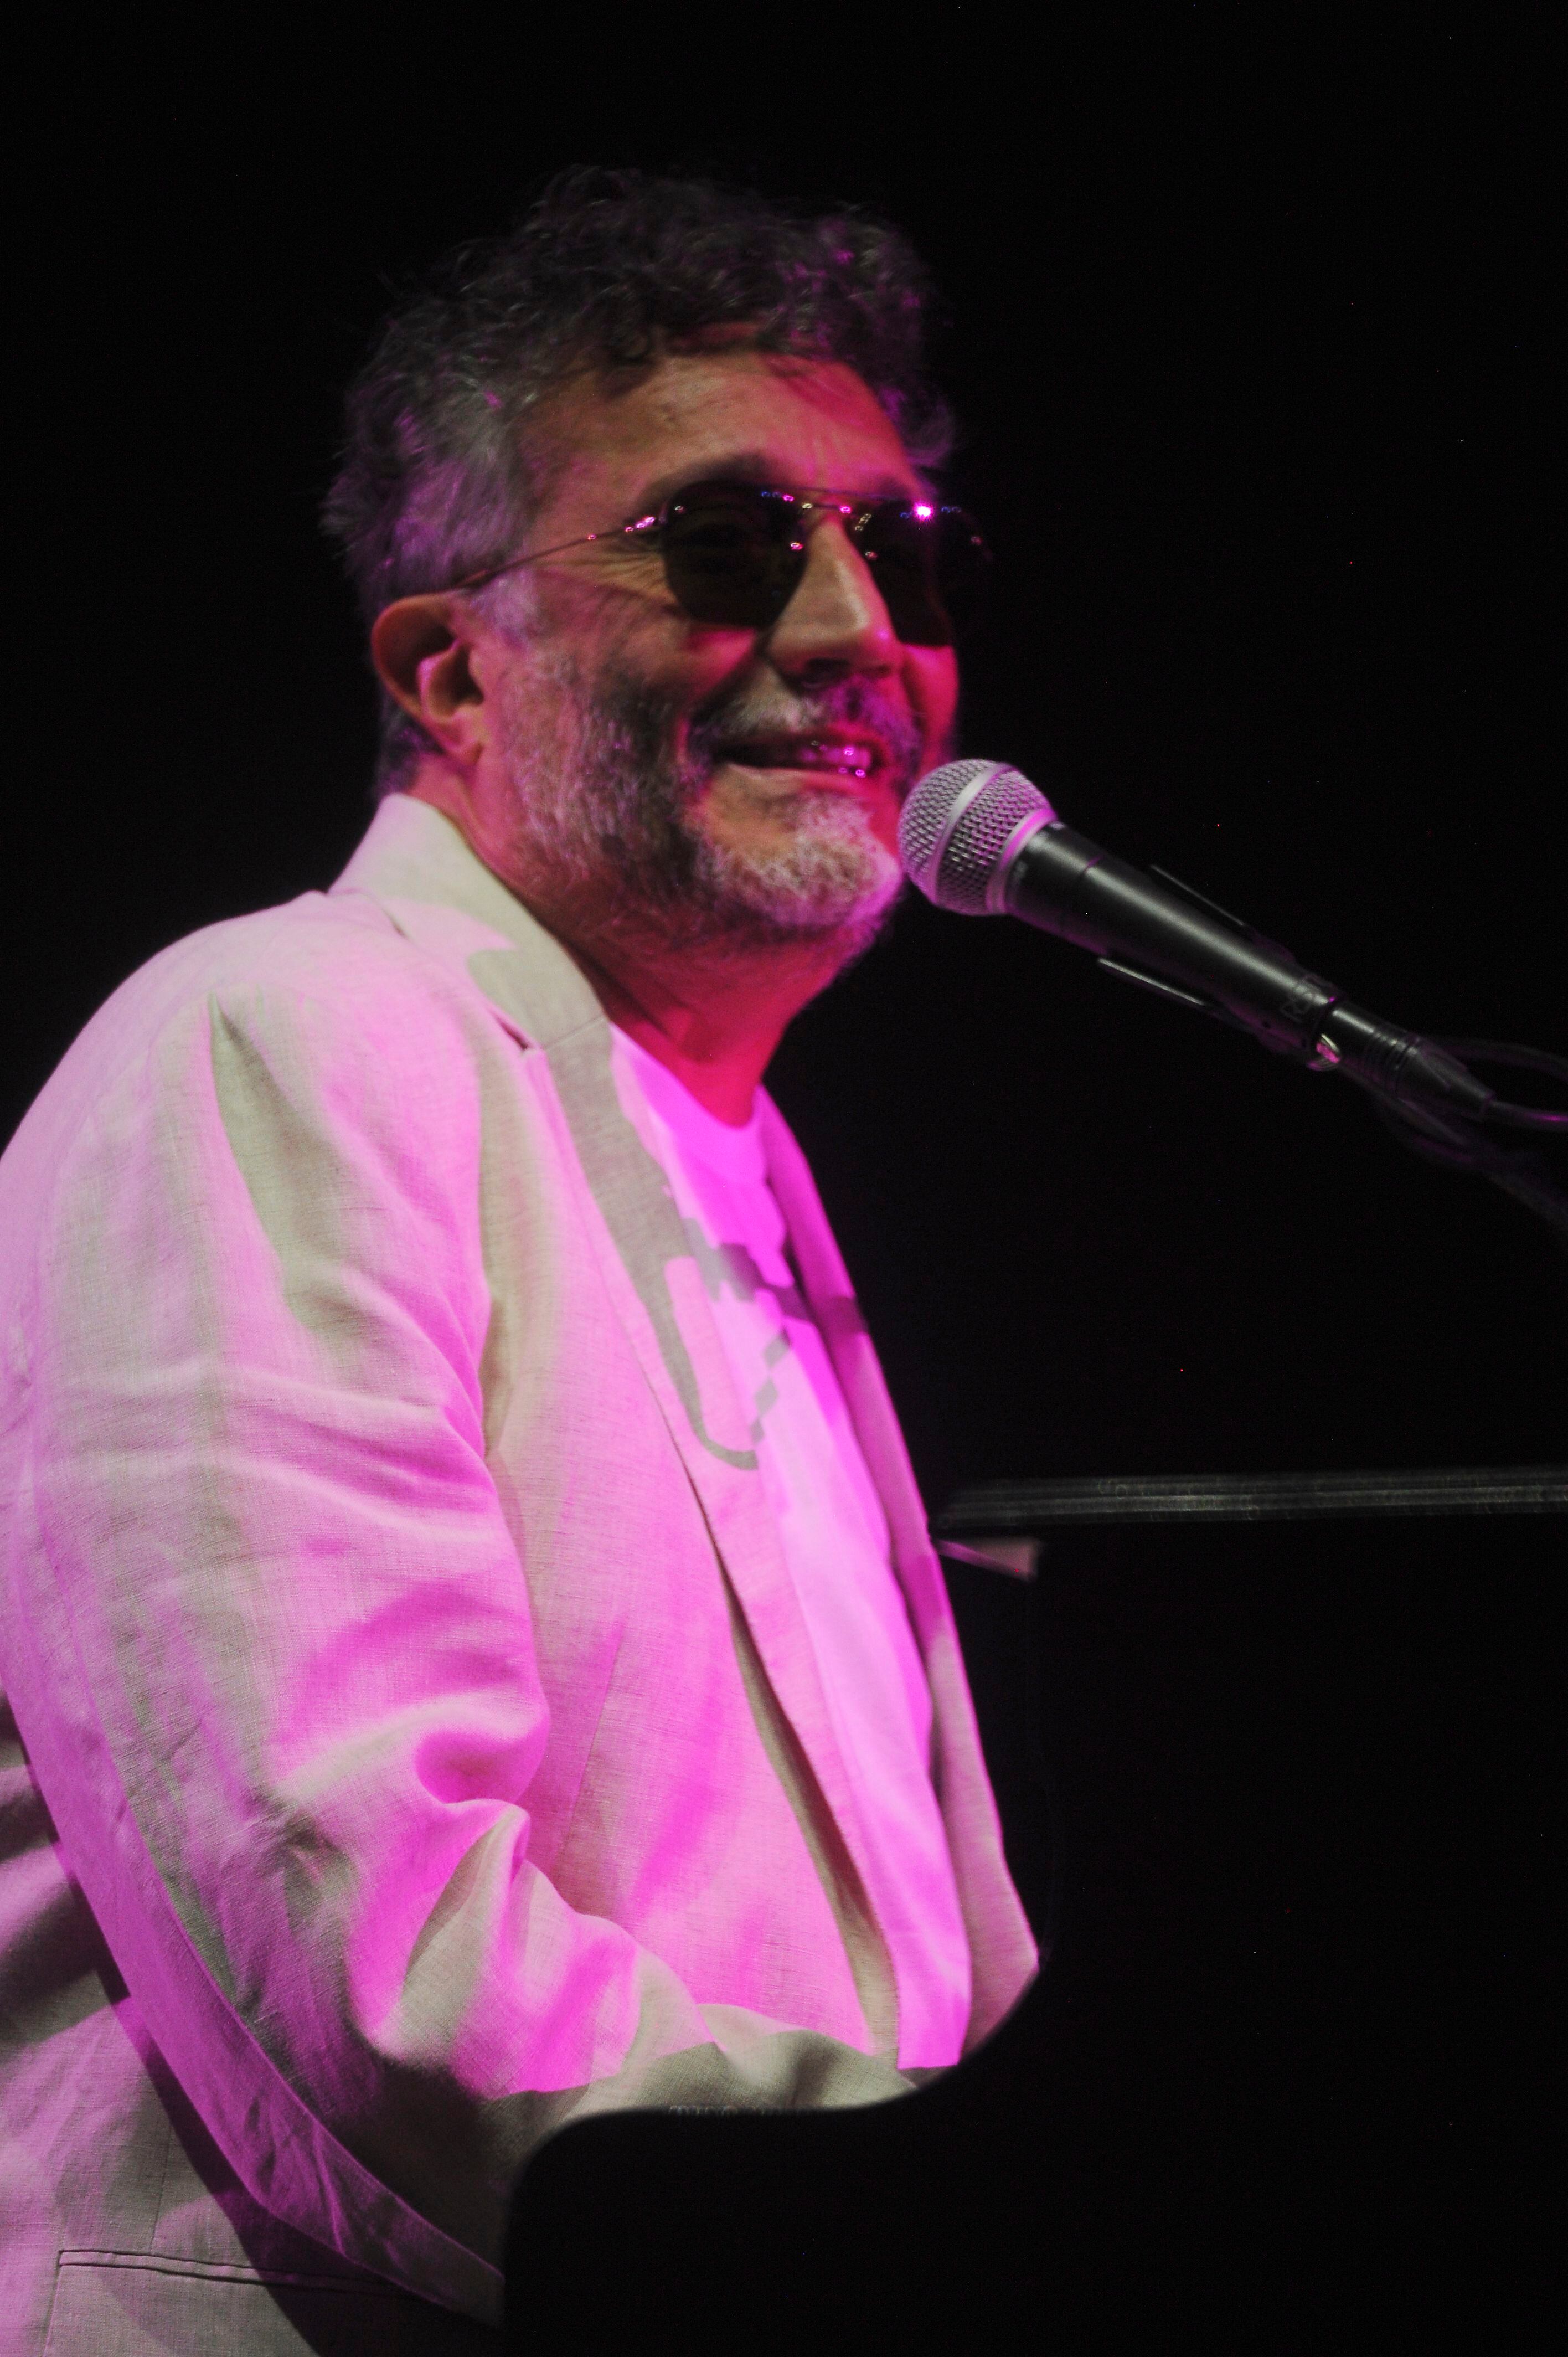 Durante su show en Costa Rica, Fito Páez se mostró cercano y cariñoso con el público que lo esperaba para cantar con él. Foto: Jorge Navarro.